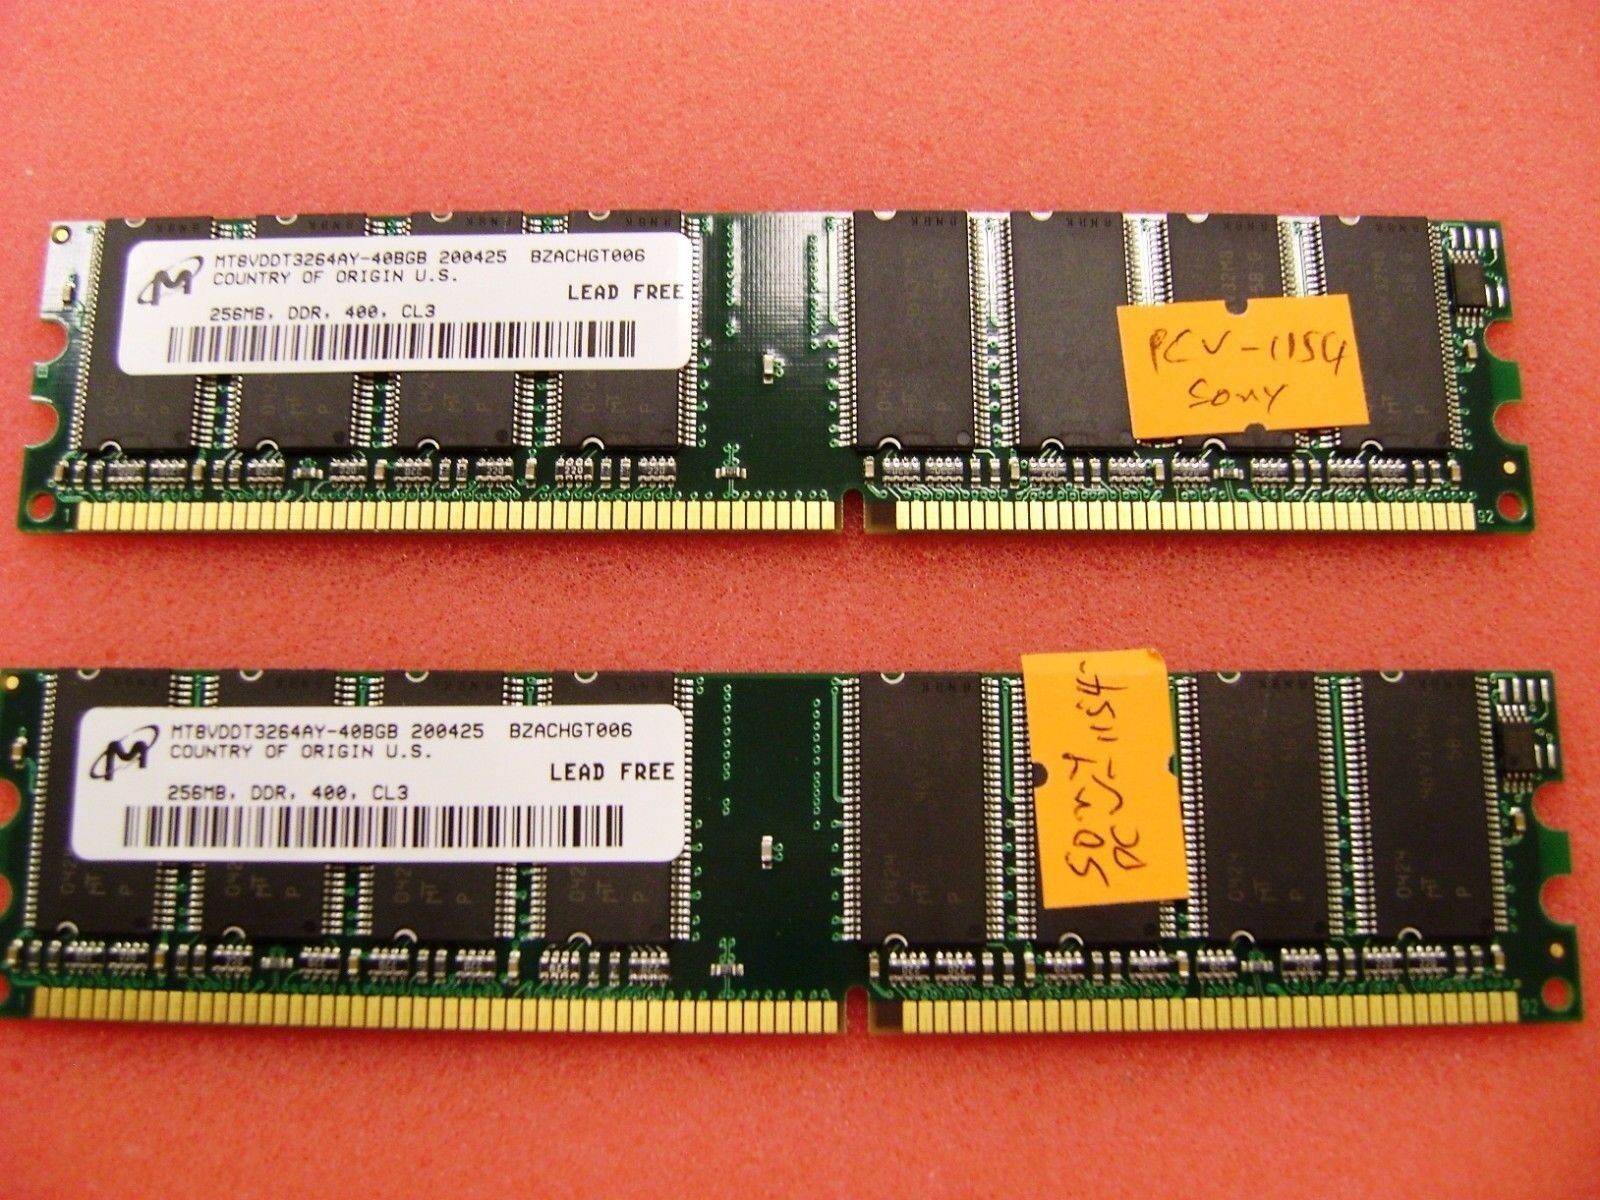 SONY Vaio PCV-1154 Desktop 512MB ( 2 x 256MB)  DDR 400 *  MT8DDT3264AY-40BGB